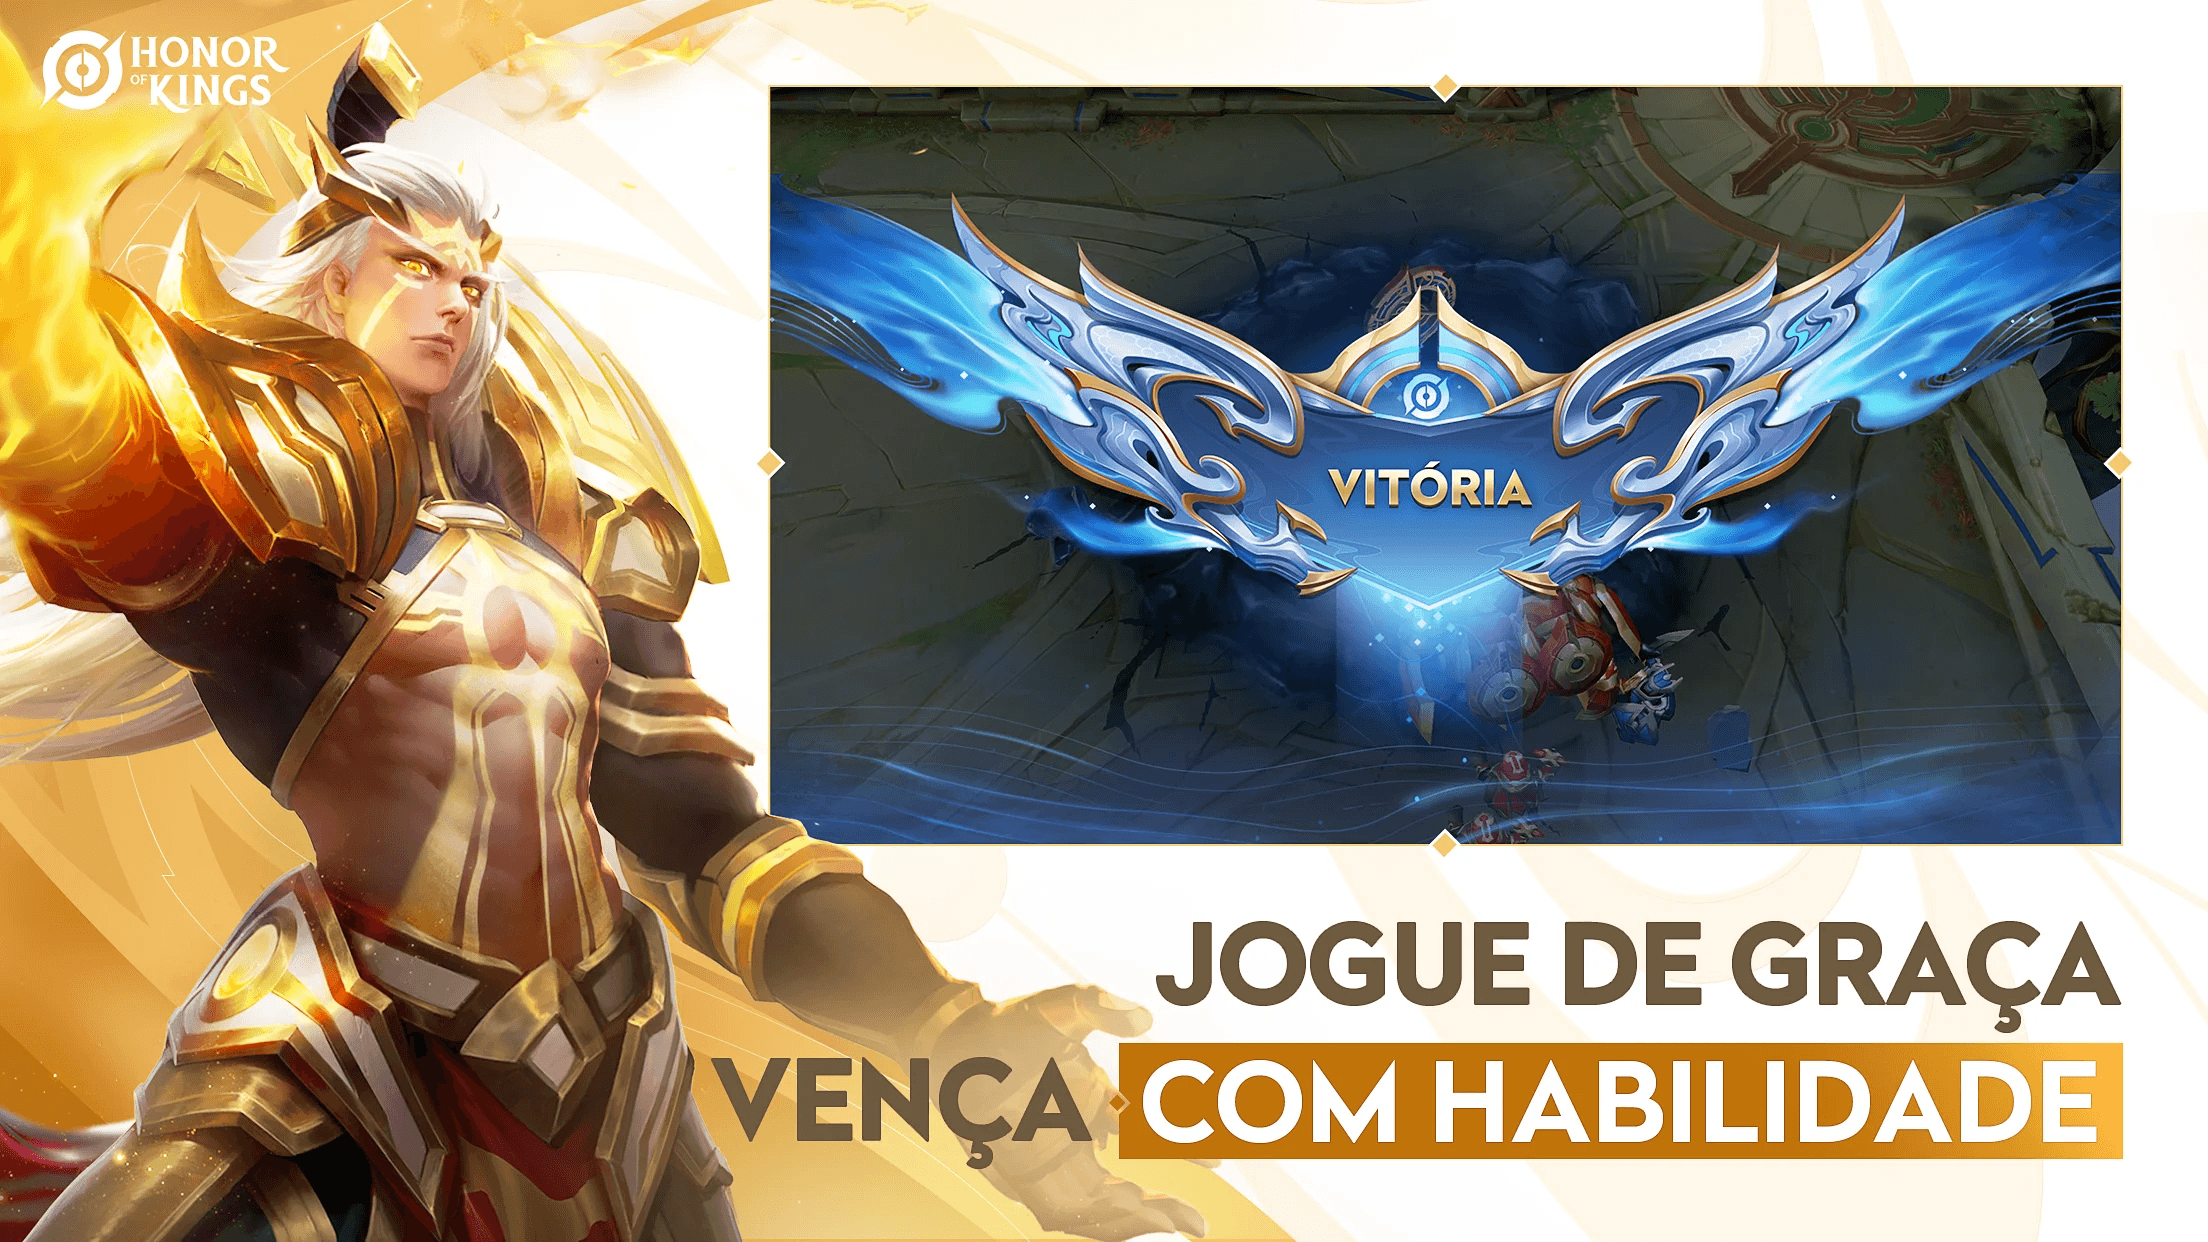 Honor of Kings - Game ganha data de lançamento no Brasil!